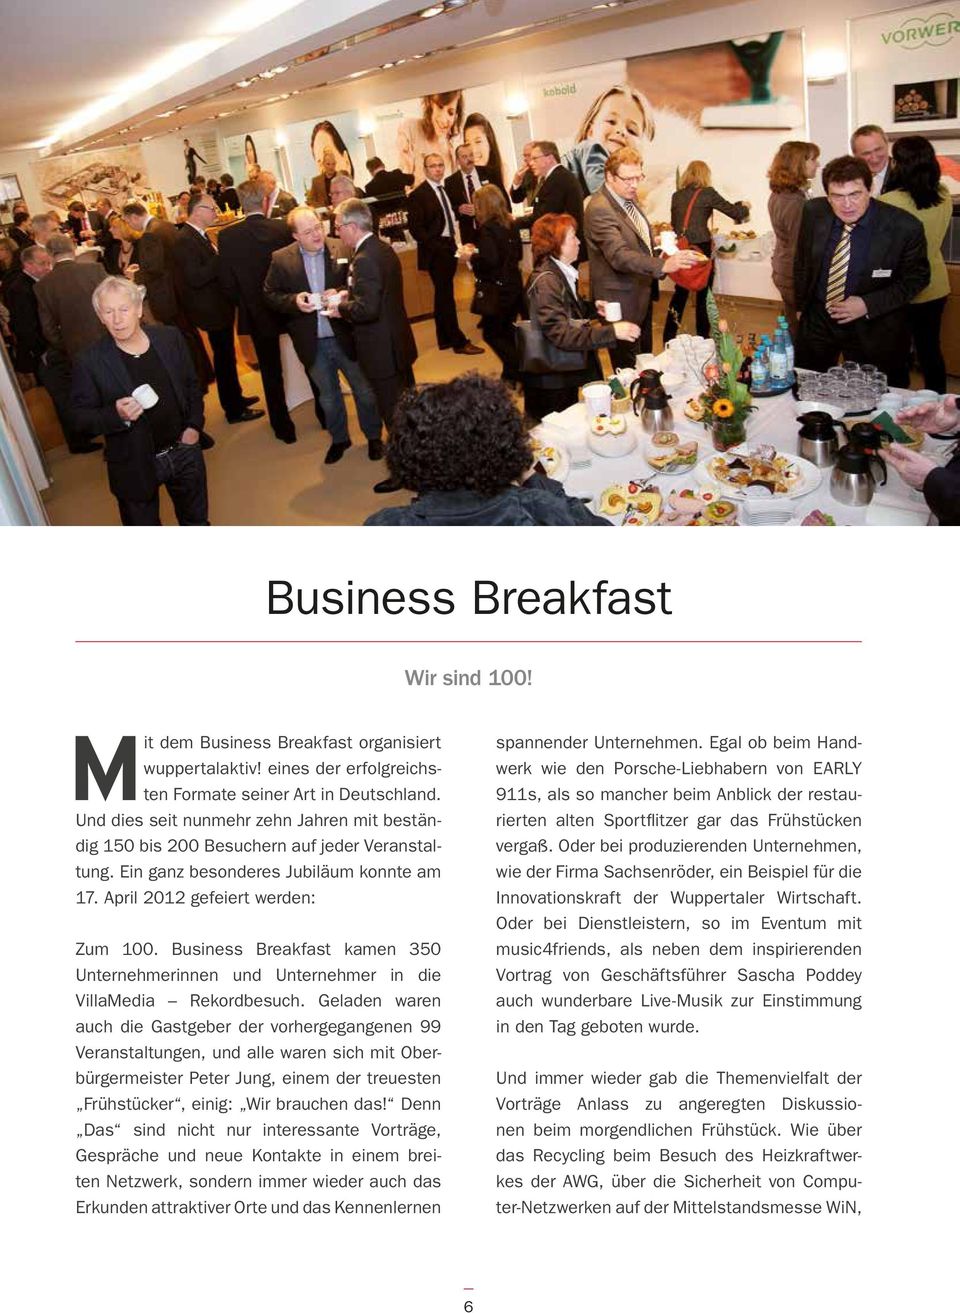 Business Breakfast kamen 350 Unternehmerinnen und Unternehmer in die VillaMedia Rekordbesuch.